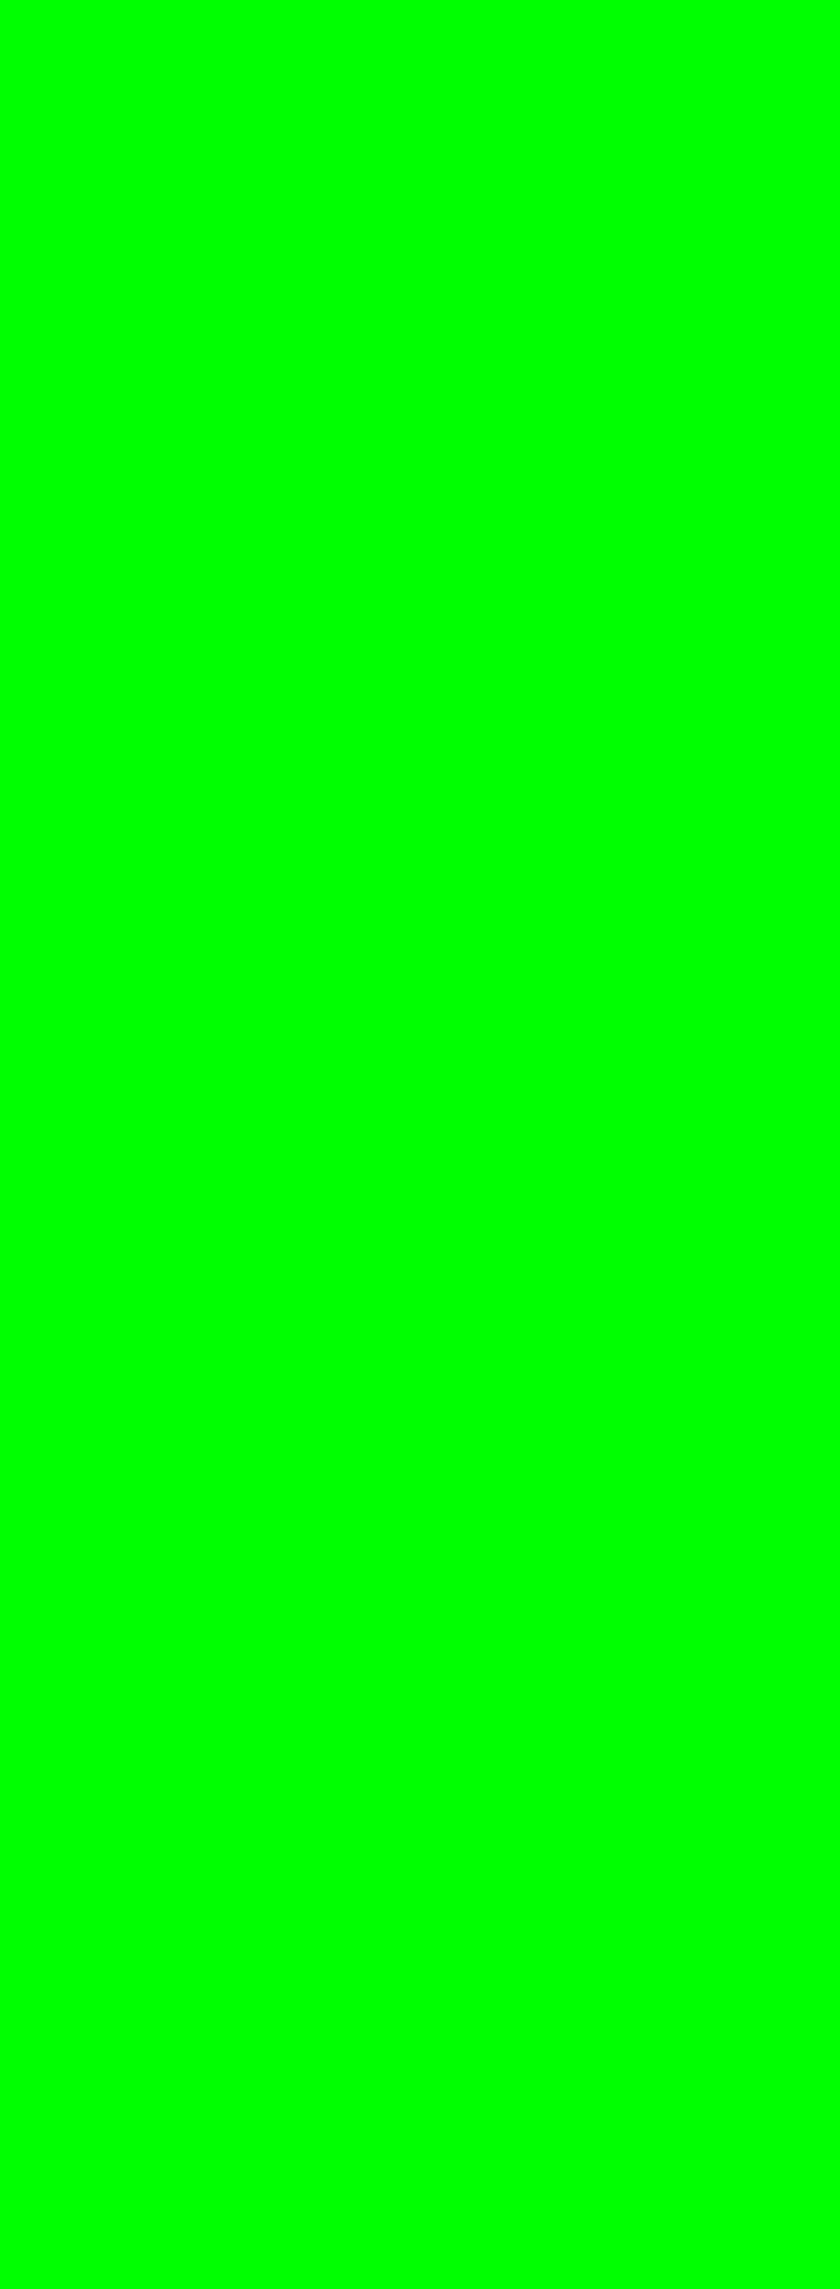 Samsung Pixel Test Green